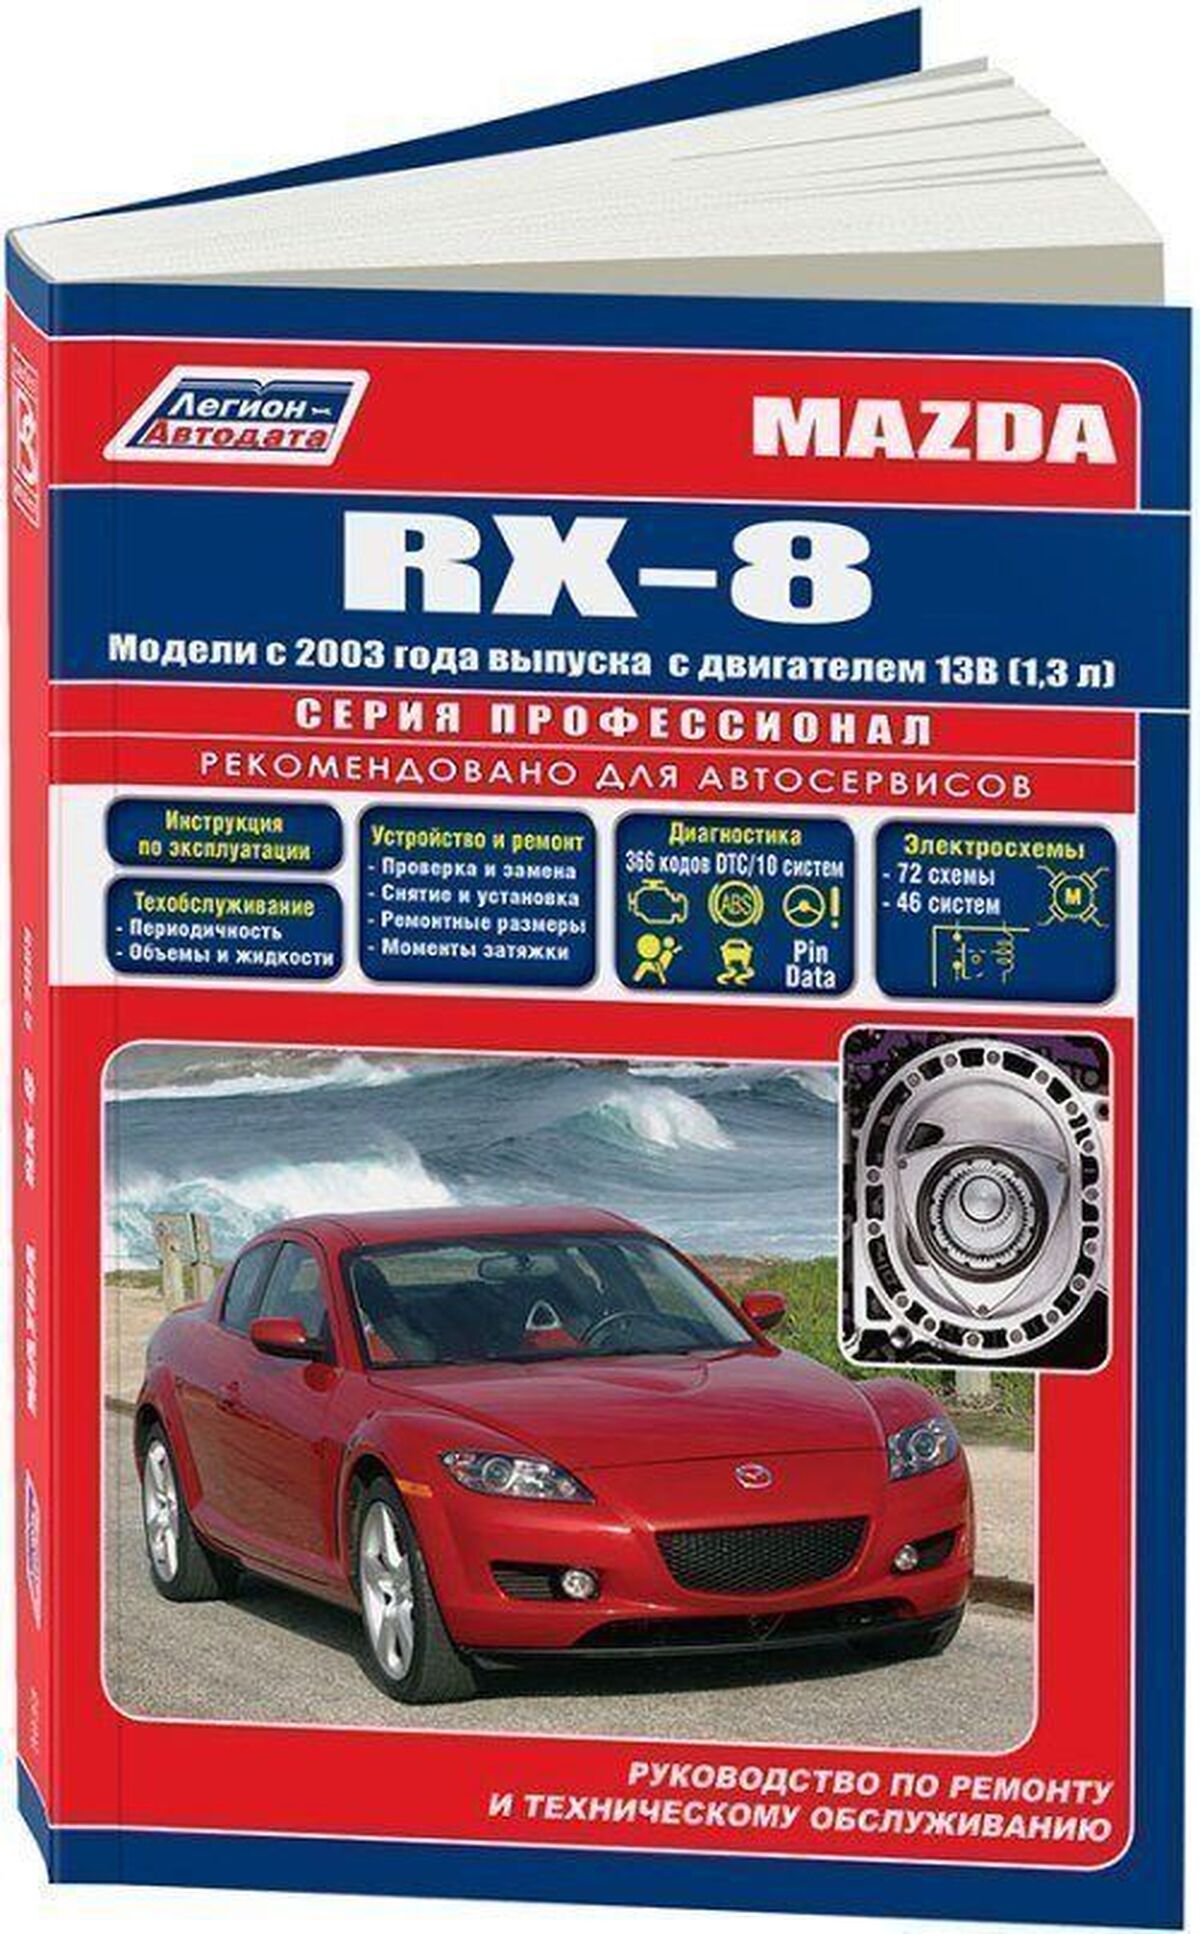 Книга: MAZDA RX-8 (б) с 2003 г.в., рем., экспл., то | Легион-Aвтодата